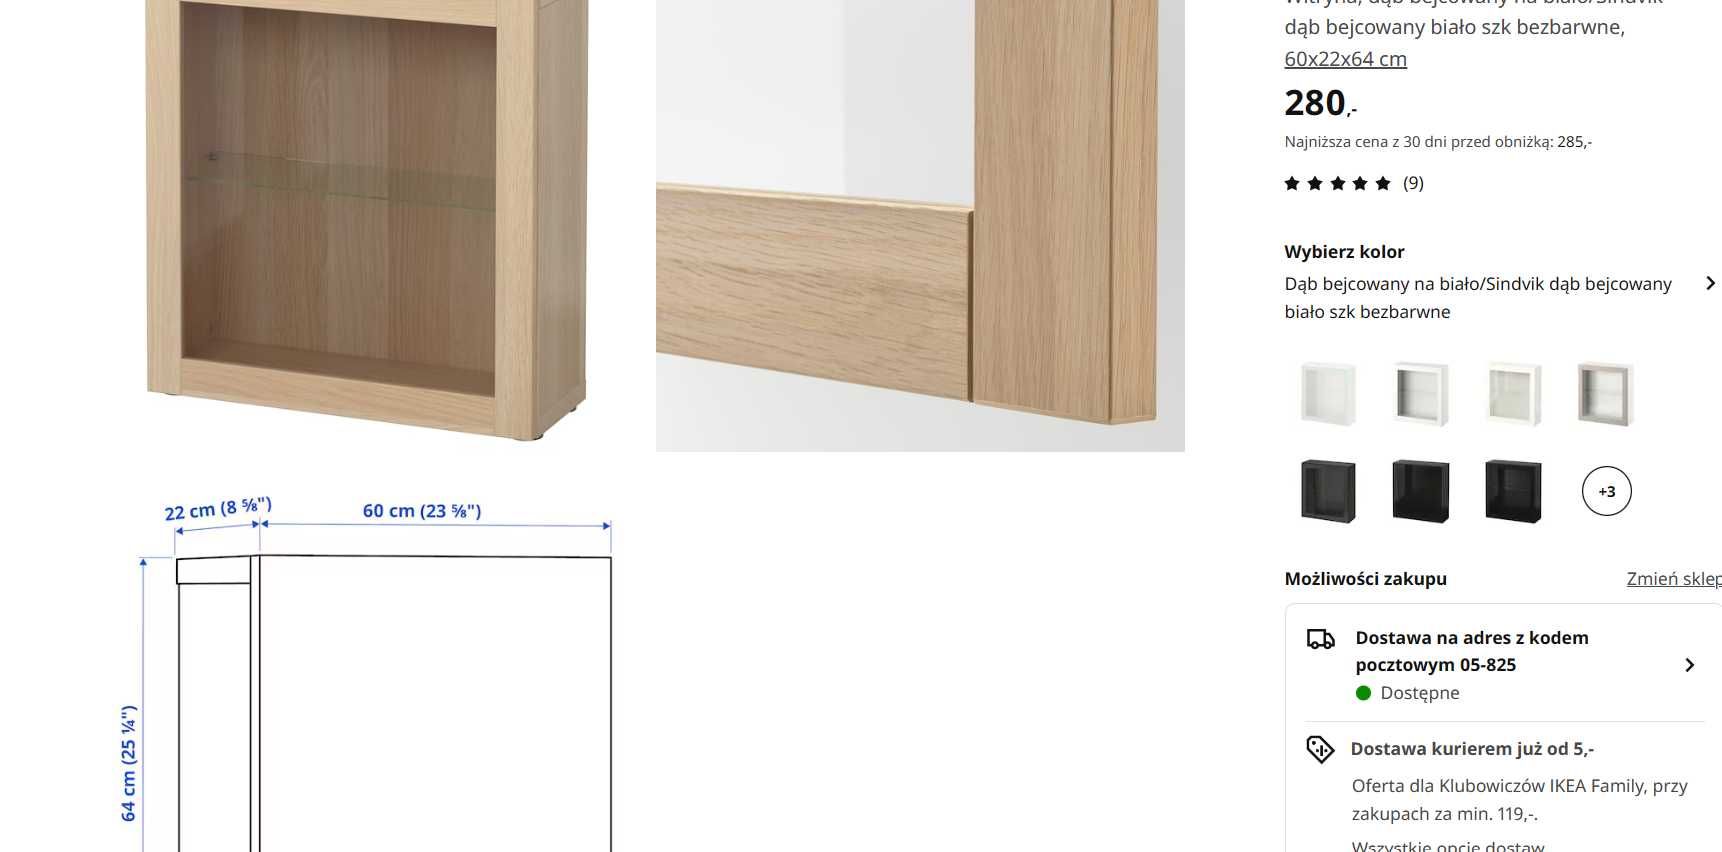 Ikea Besta witryny lub pełne drzwi dąb 60x22x64 i 60x22x38 zestaw 4szt